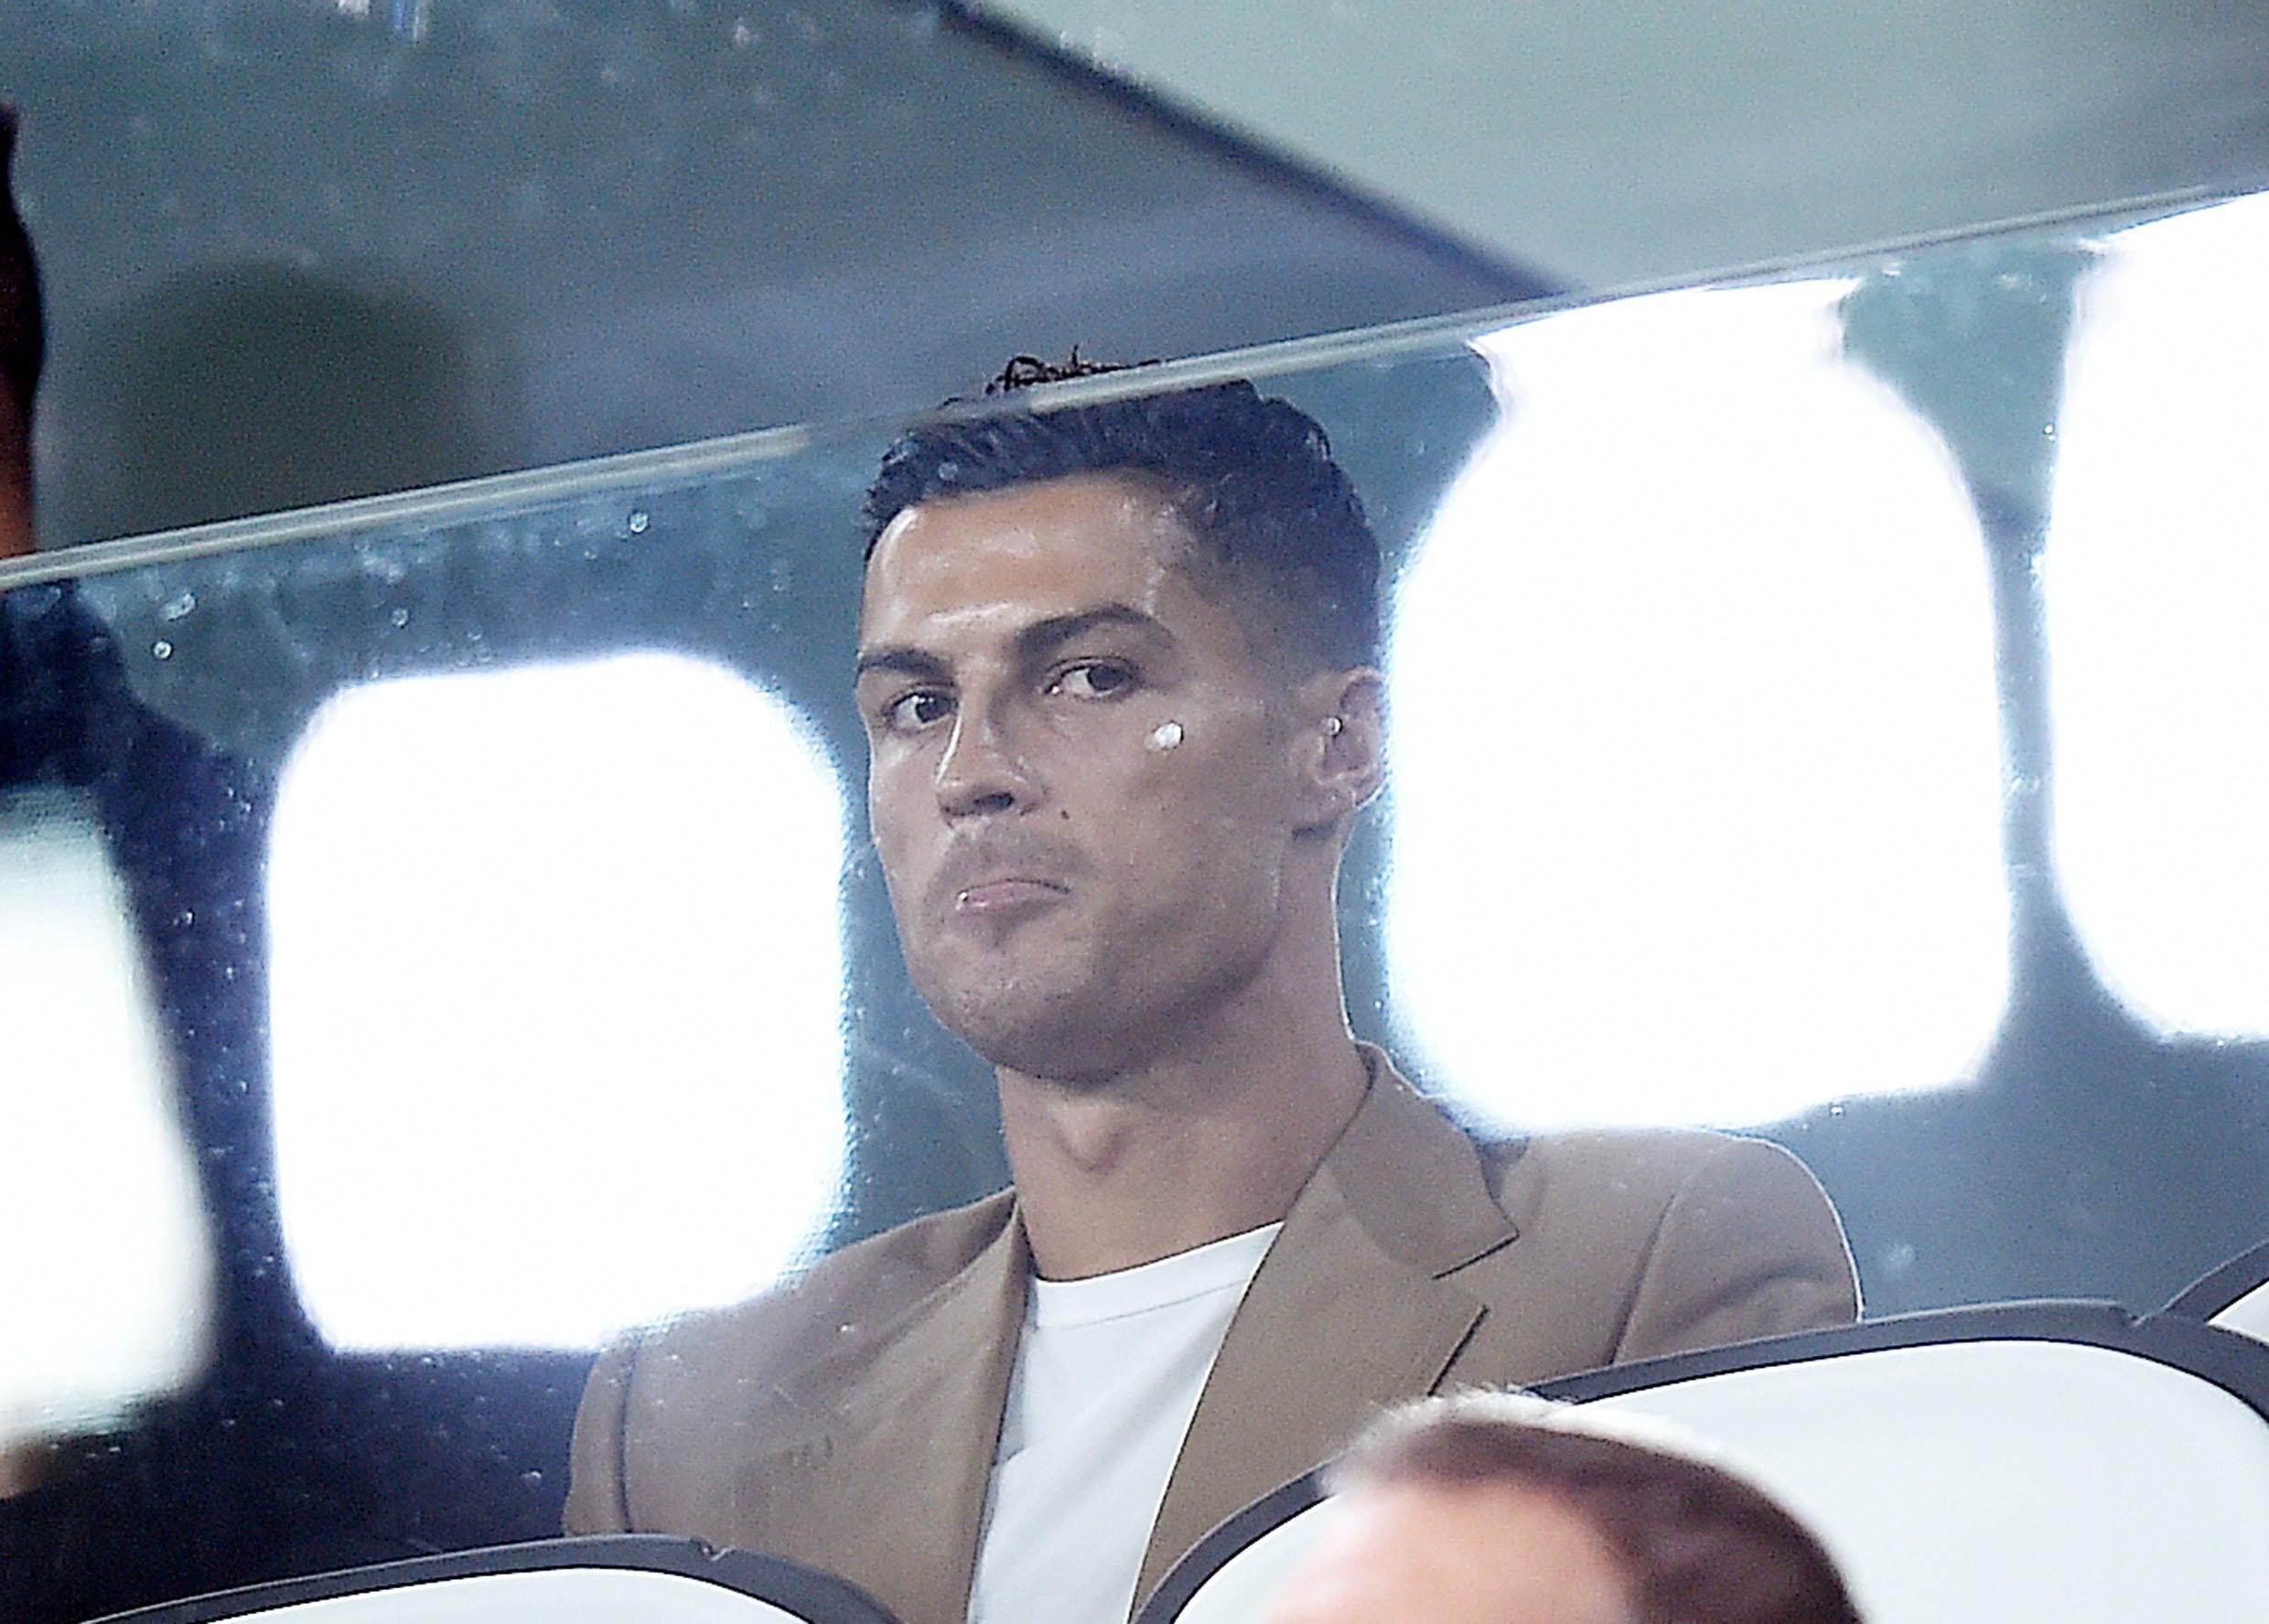 L'acusació de violació deixarà Ronaldo sense patrocinadors?